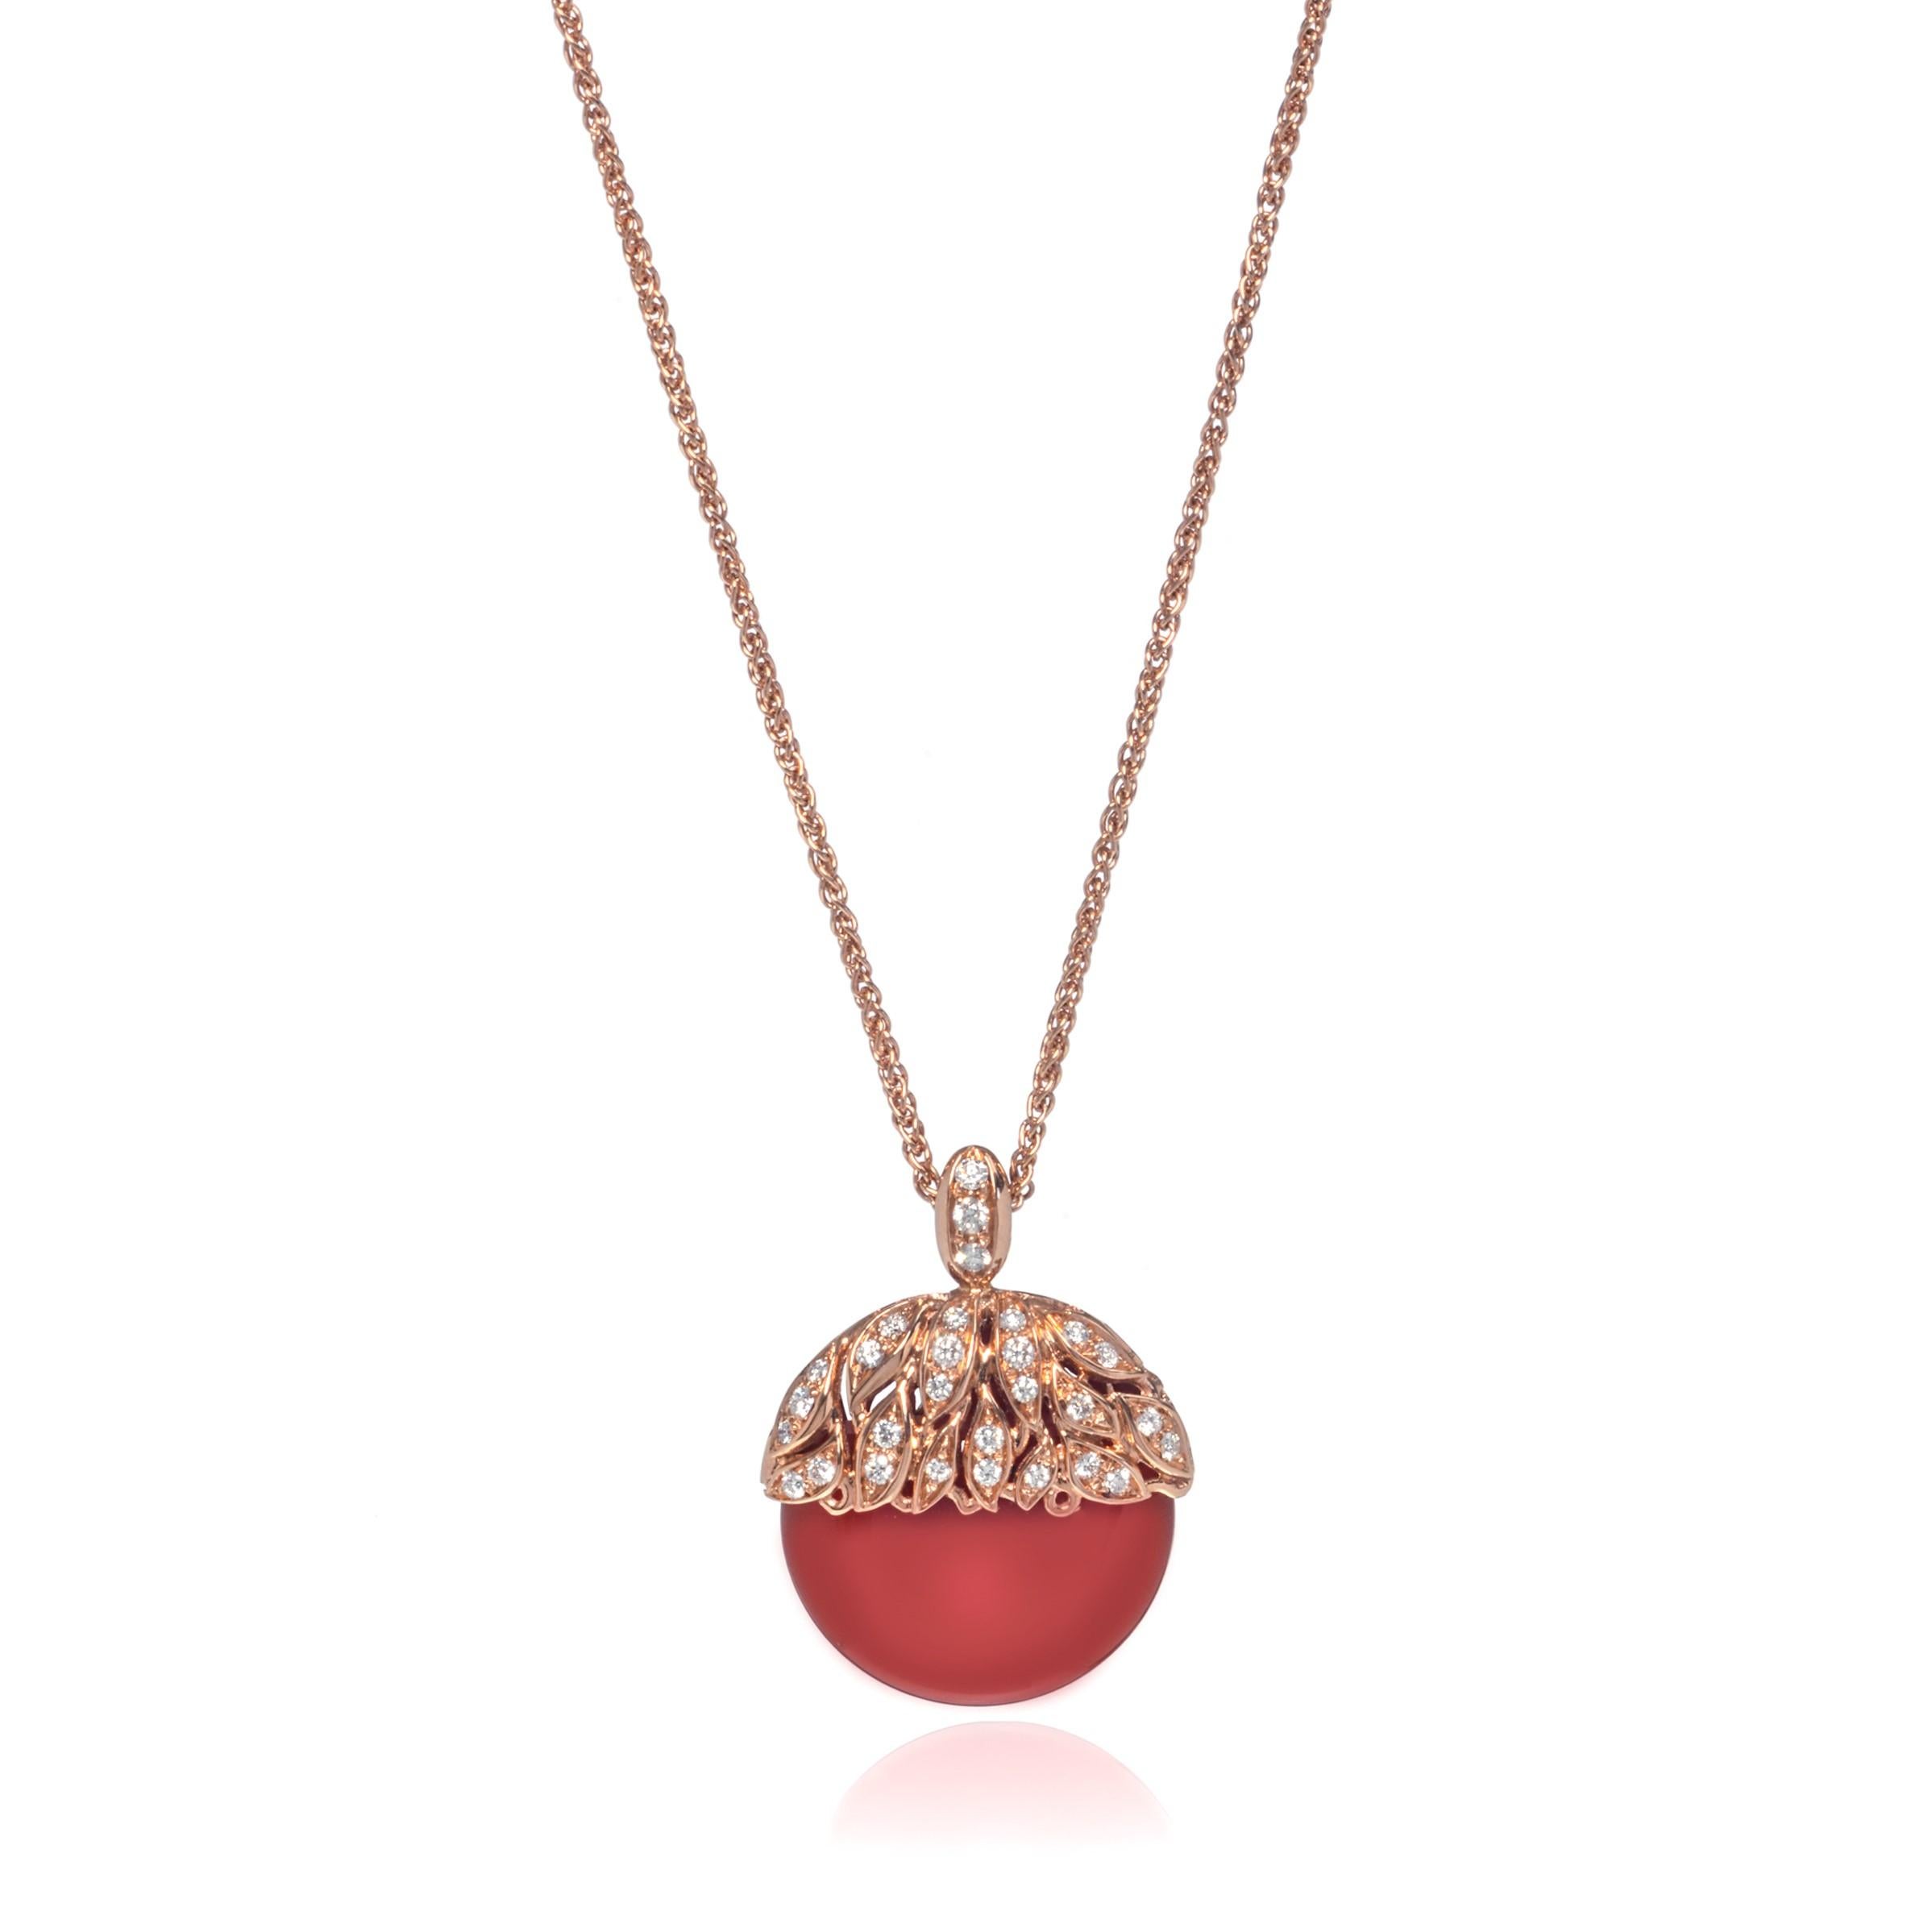 Magnifique collier à pendentifs en agate rouge et diamants de Luca Carati. Réalisé en or rose 18k et serti de diamants de taille brillant de 0,30cttw. Diamant de couleur G et de pureté VVS. Agate rouge taille : 2,50 grammes. Longueur de la chaîne :